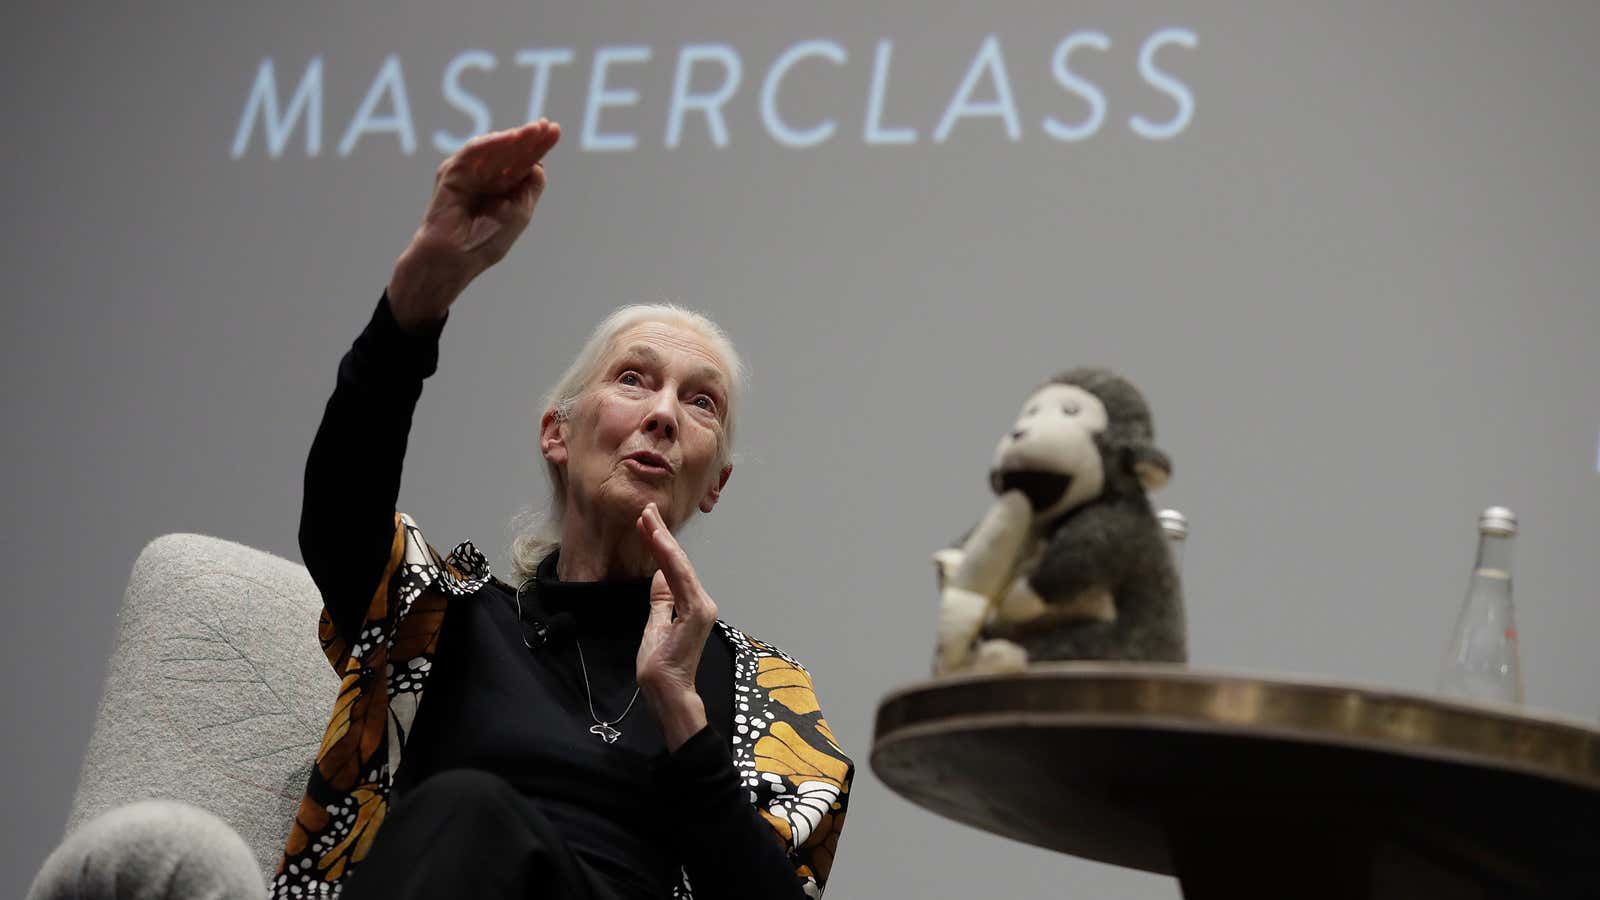 Dr. Jane Goodall speaks during the “Dr. Jane Goodall’s MasterClass” New York screening in September 2017.